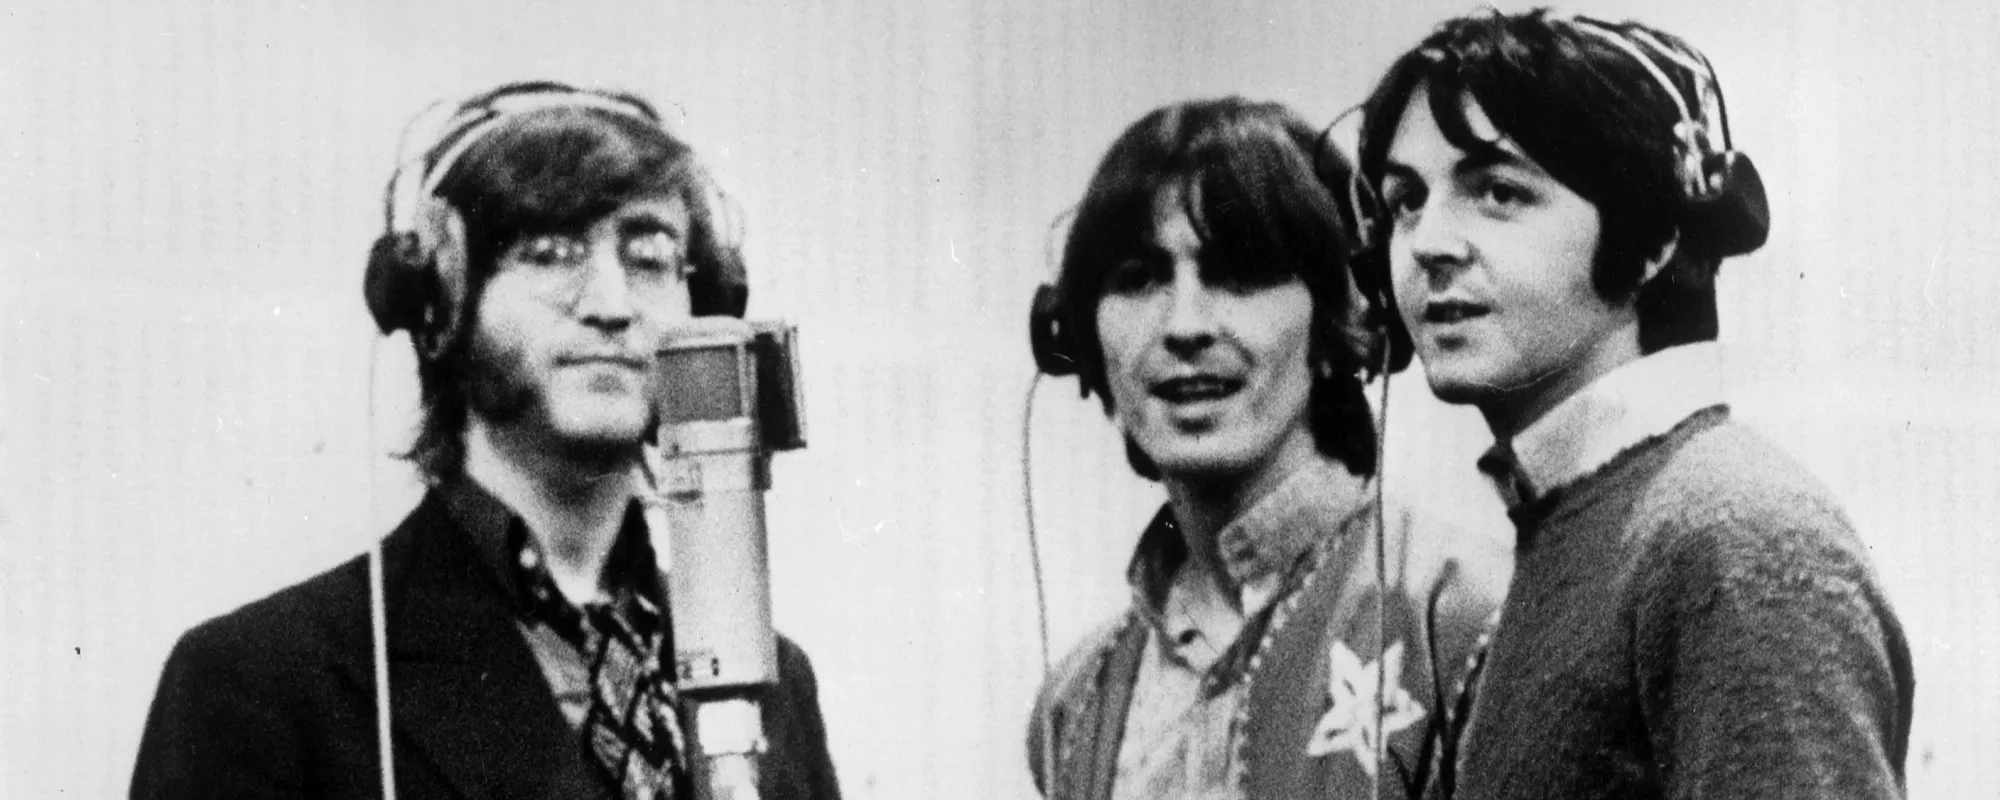 Drummer Jim Keltner Recalls Beatles Members Being “Really Brutal” to Paul McCartney